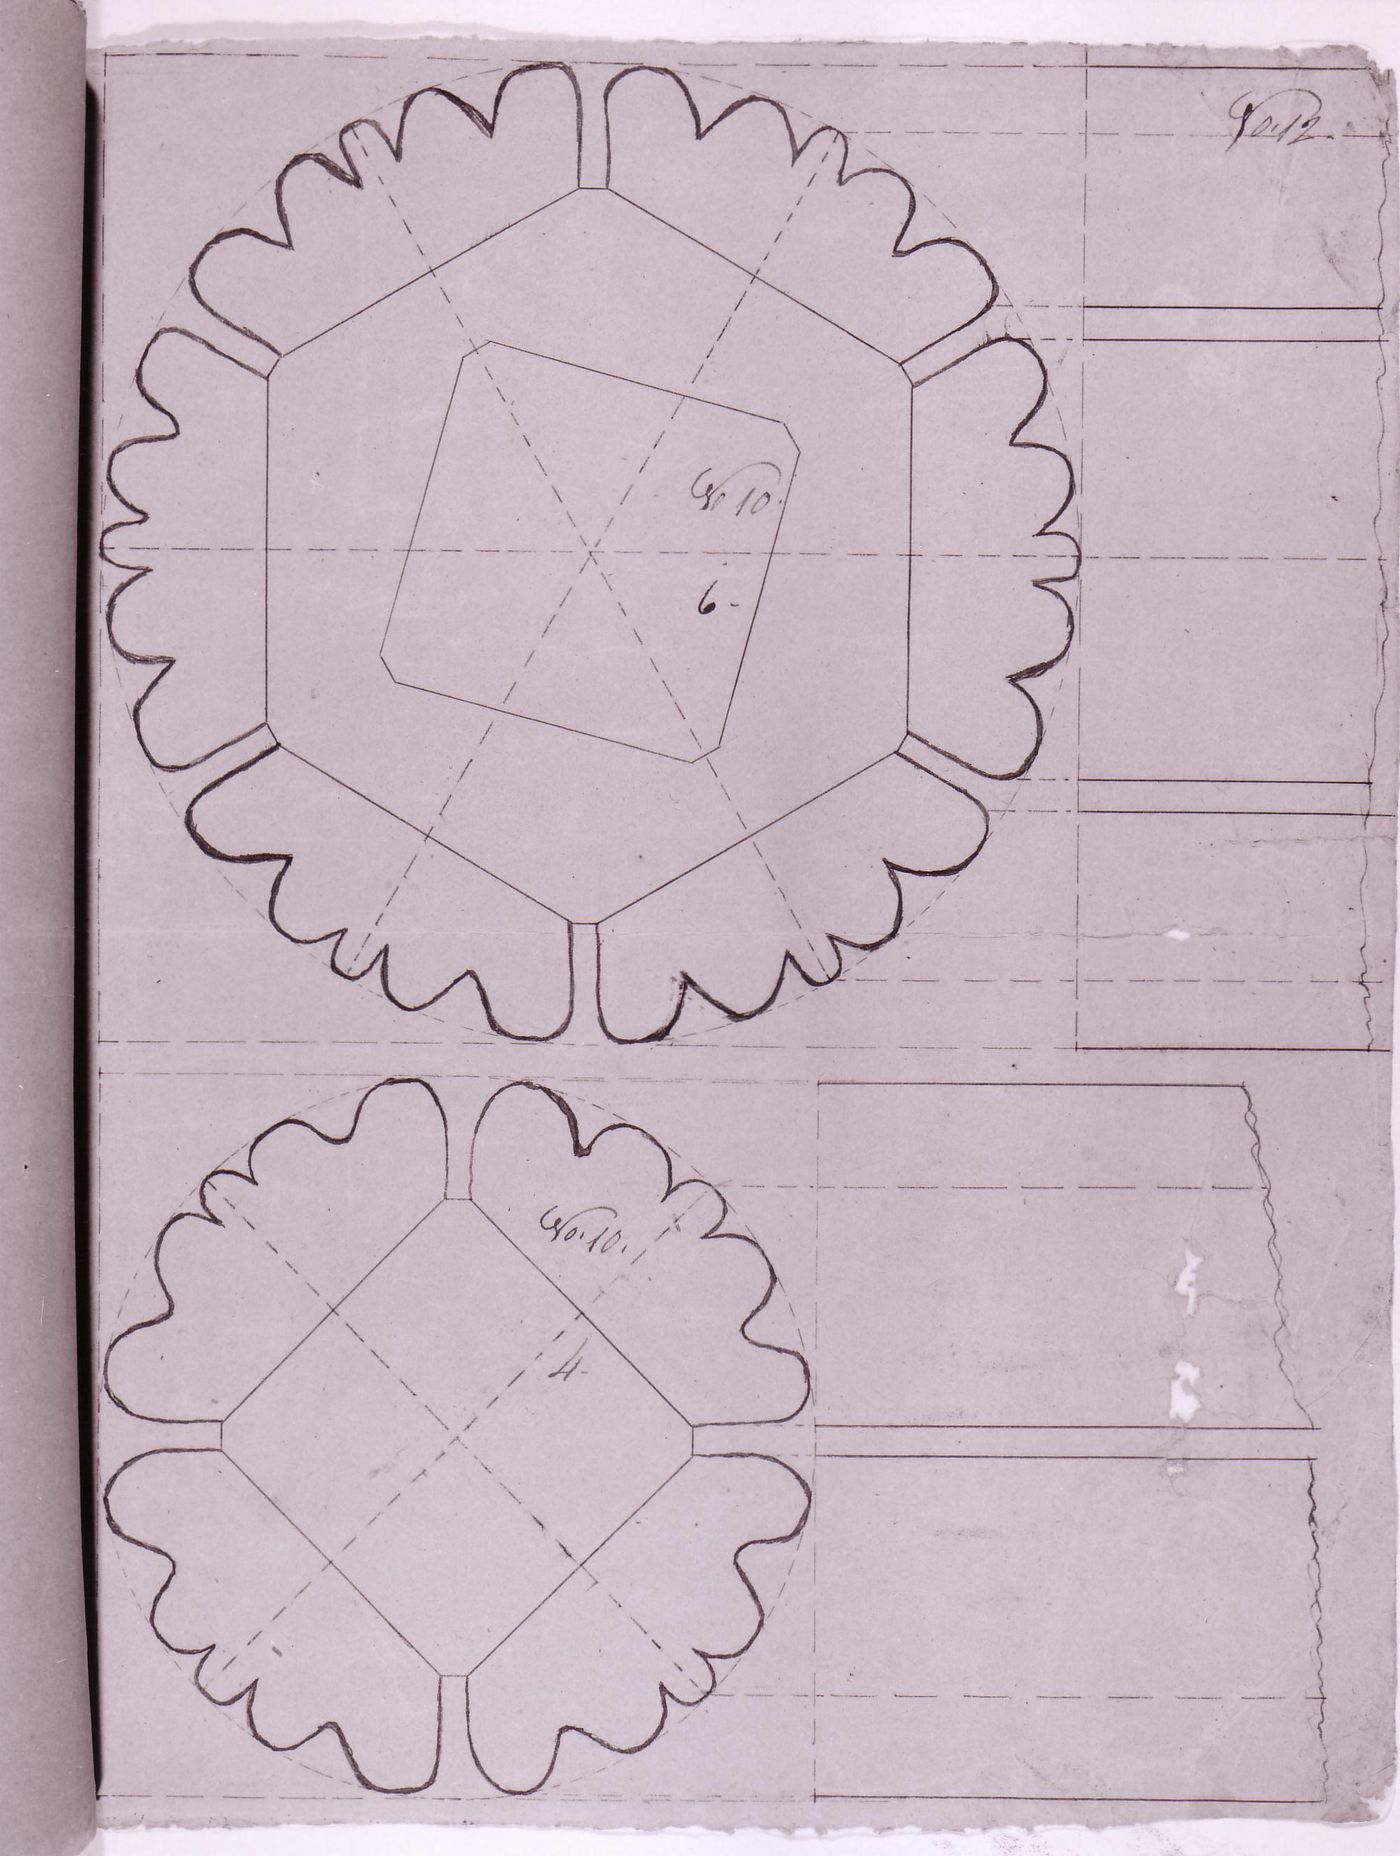 Plans and partial elevations for decorative details for the high altar for Notre-Dame de Montréal